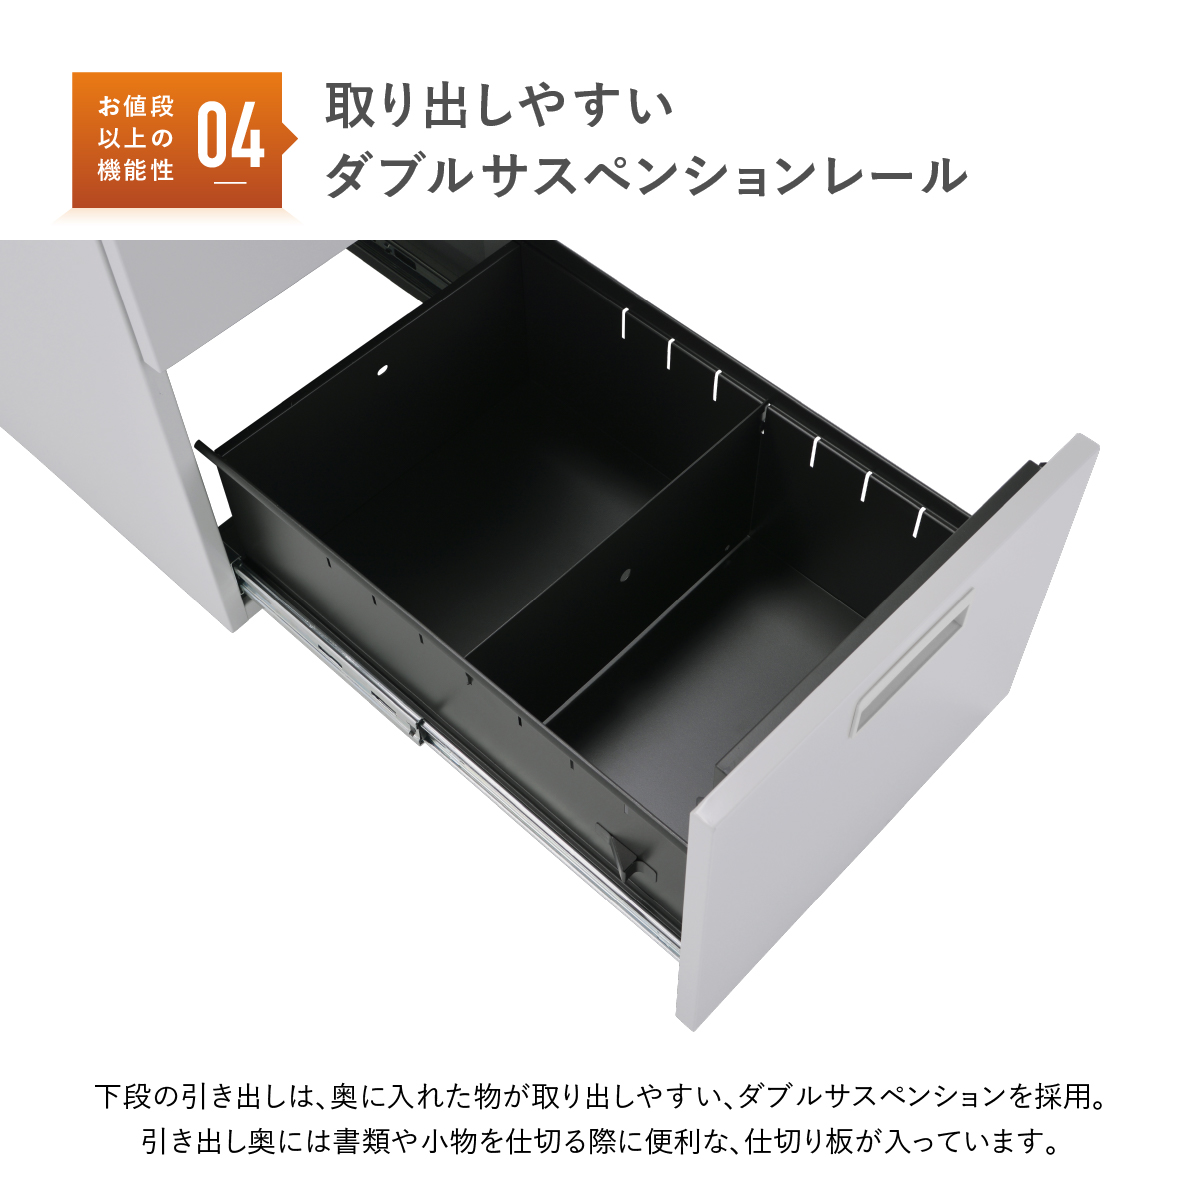 665円 最安値級価格 L型 仕切板 スチール什器用 小 磁石付 10枚入